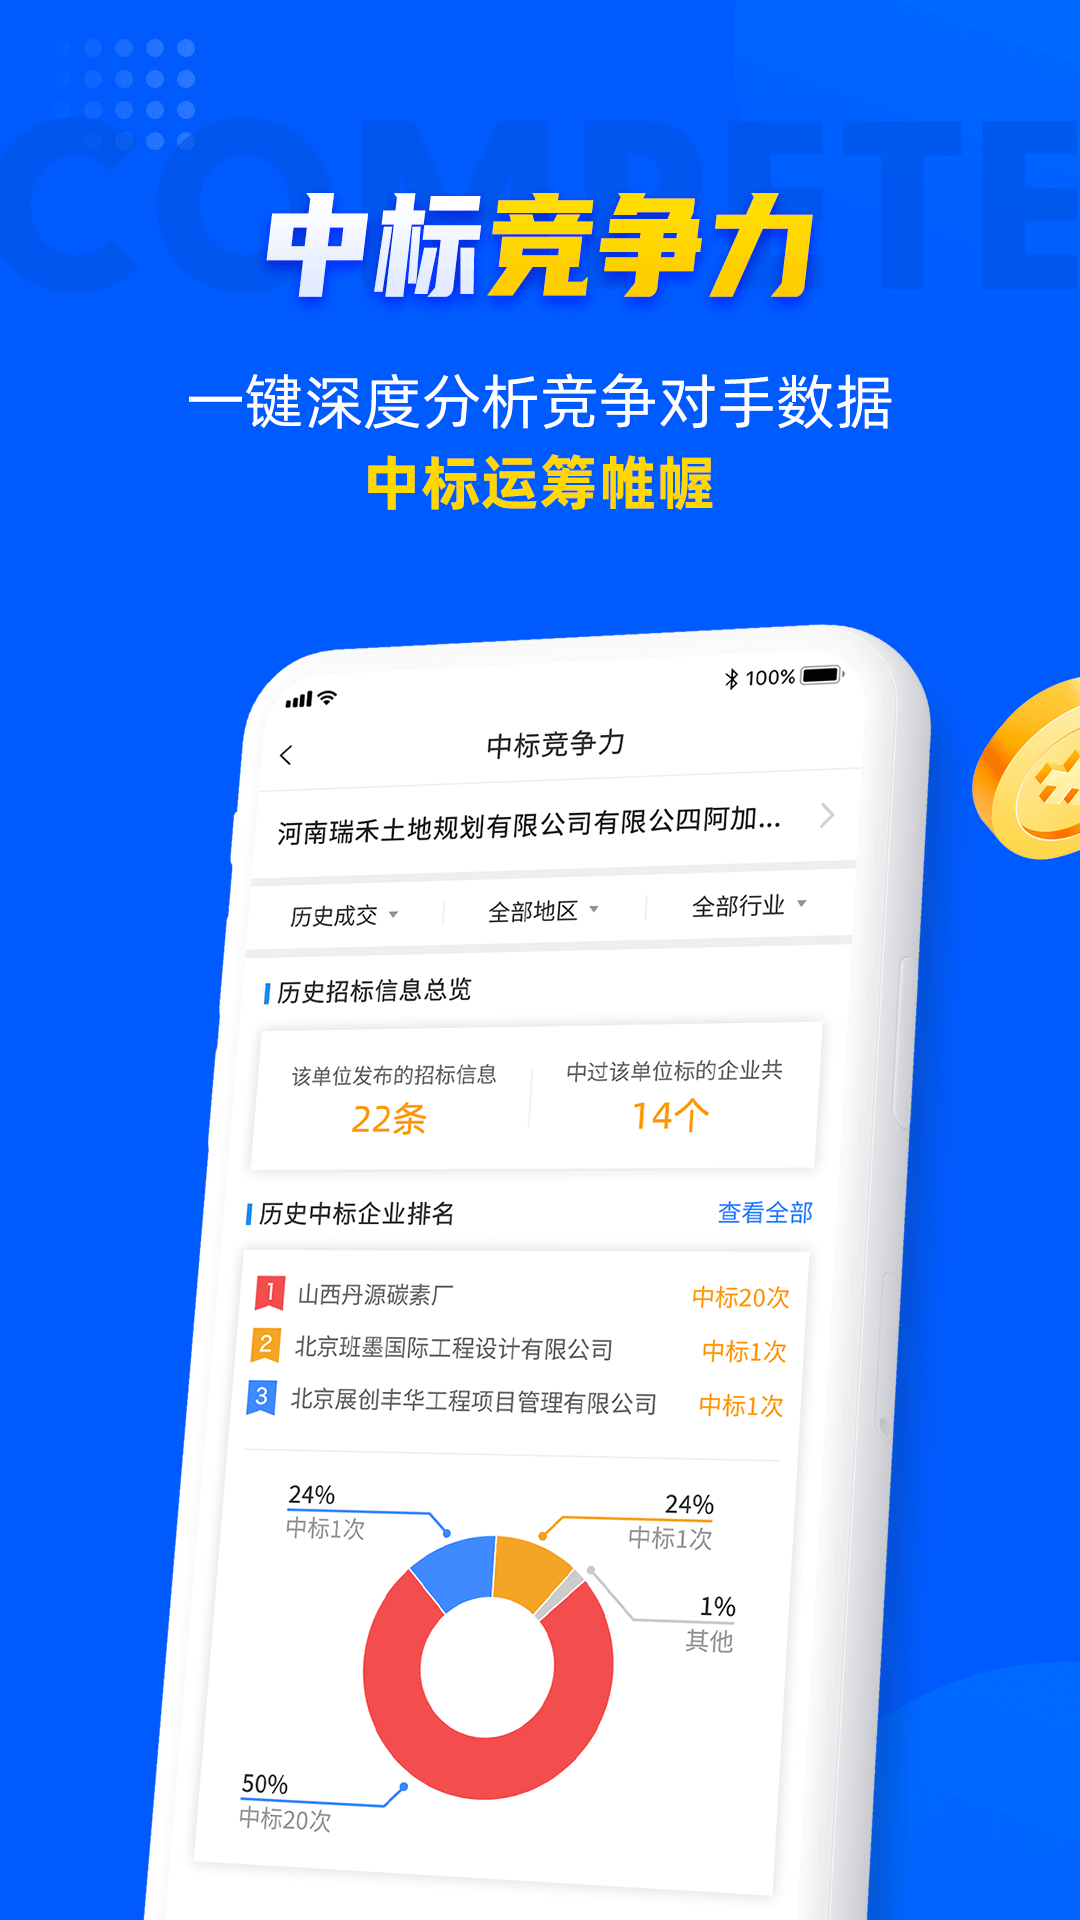 乙方宝招标官方下载app最新版截图1: